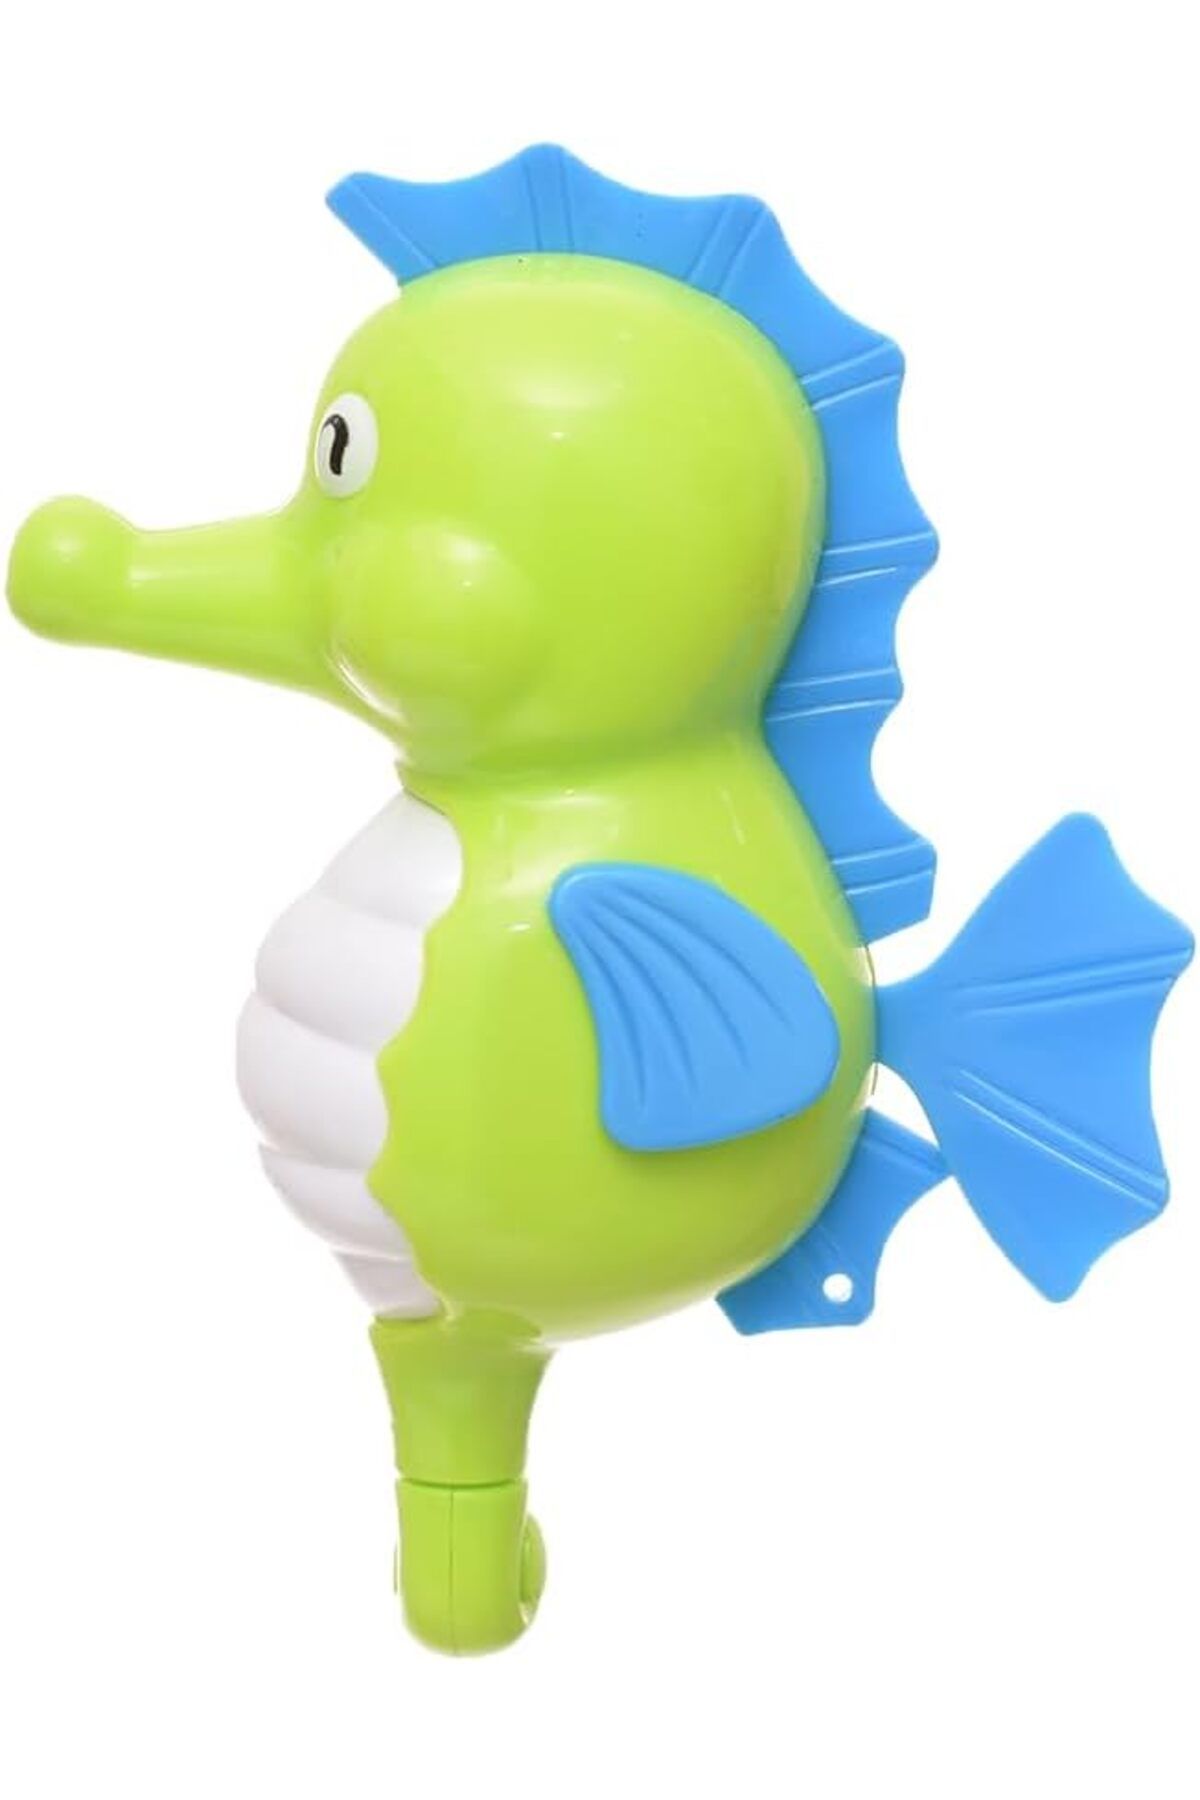 Bluoksweet Kurmalı banyo yüzme havuz çocuk kız erkek balık deniz atı kurbağa oyuncak